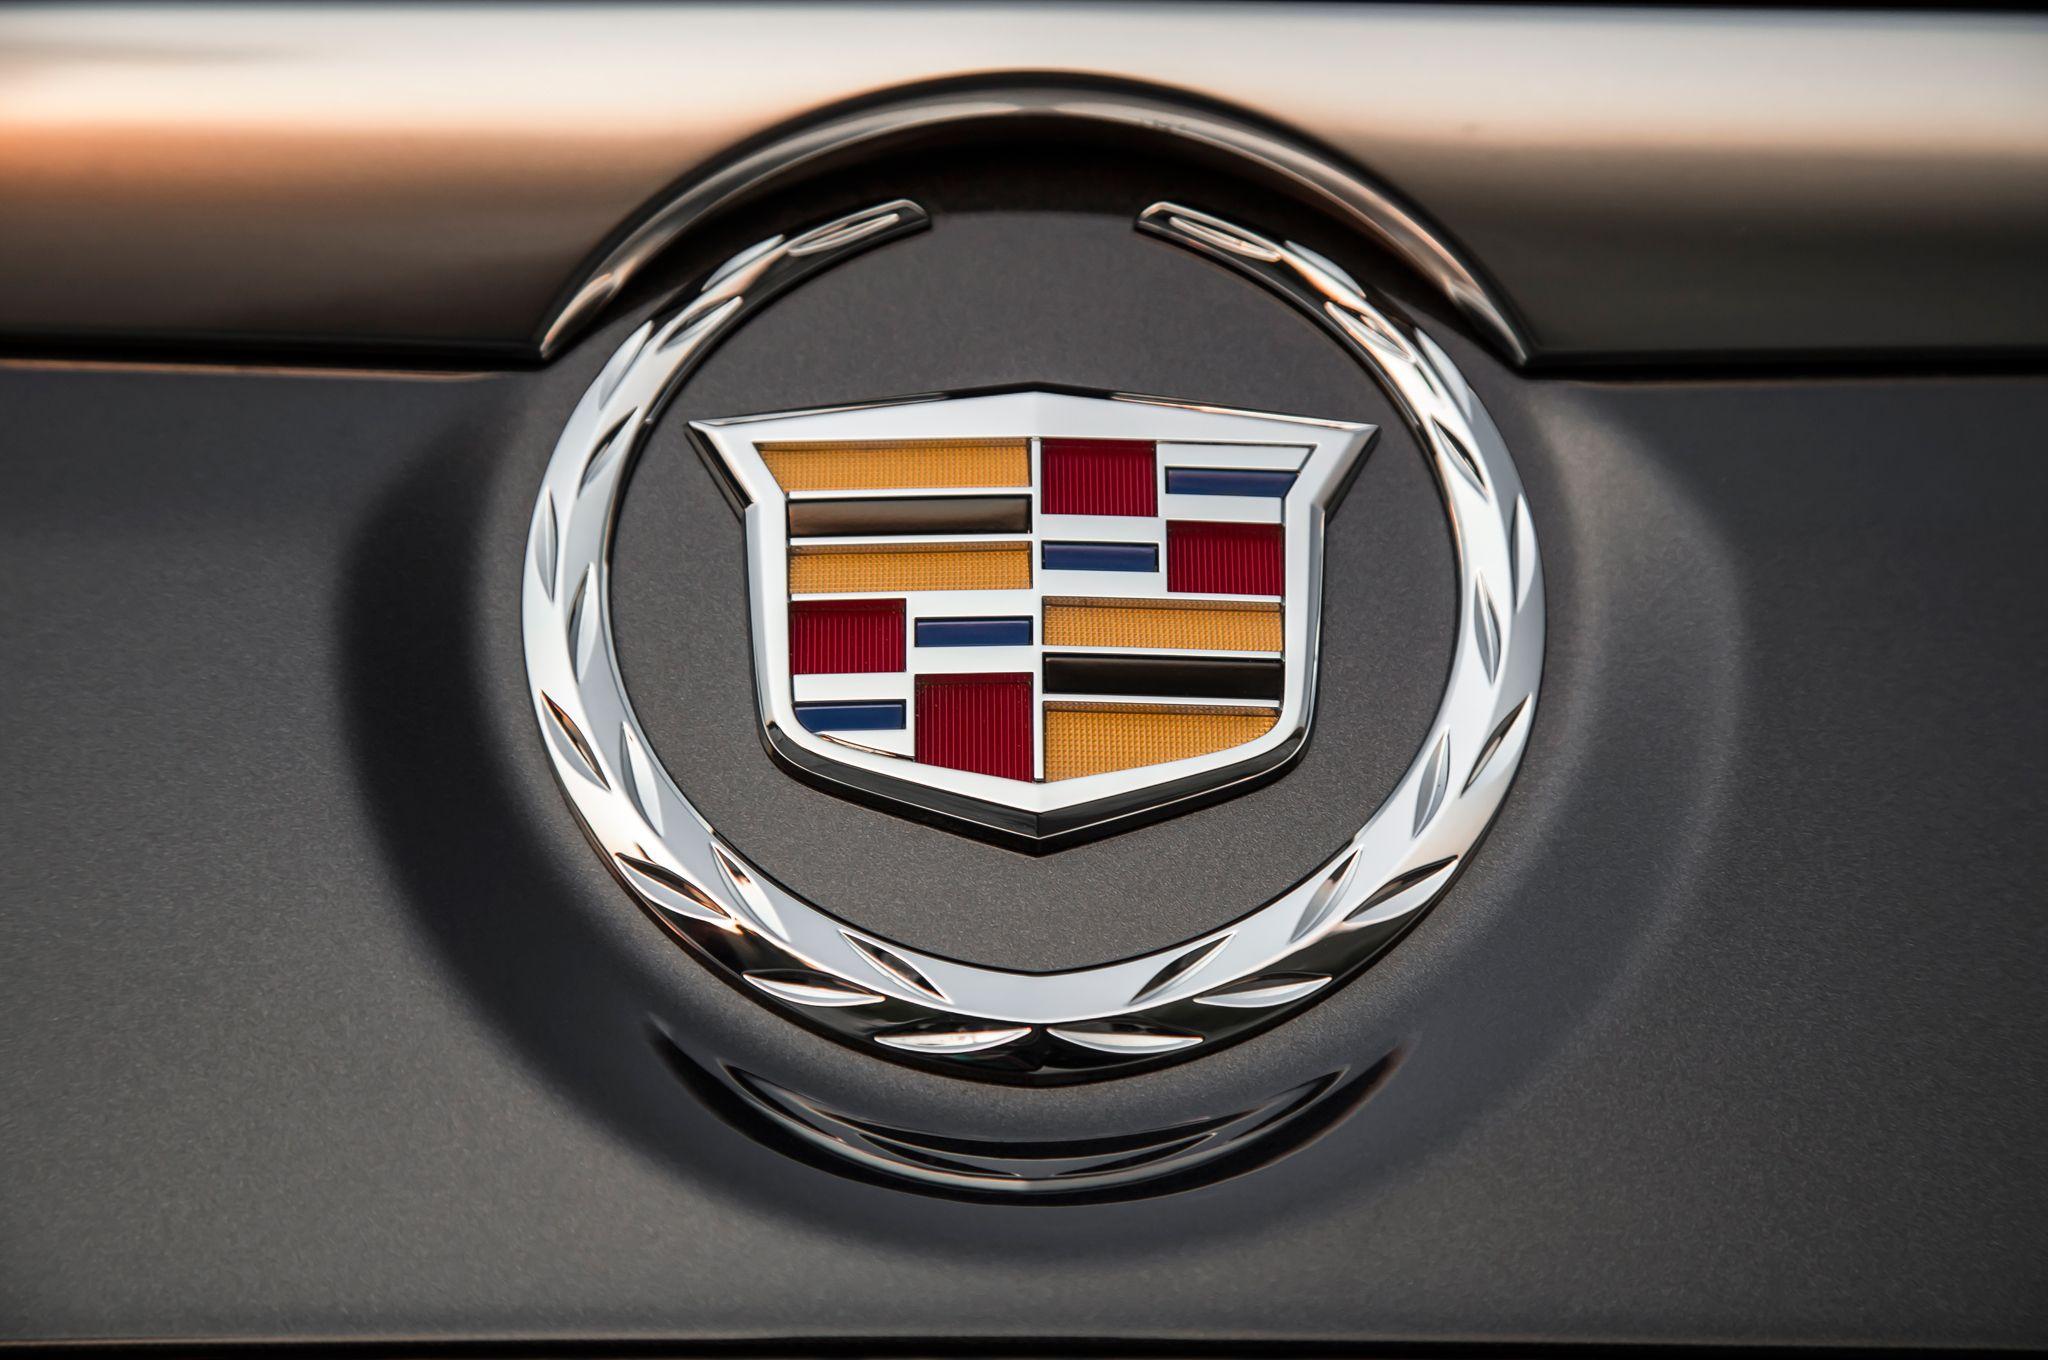 2014 New Cadillac Logo - Cadillac Escalade ESV First Test